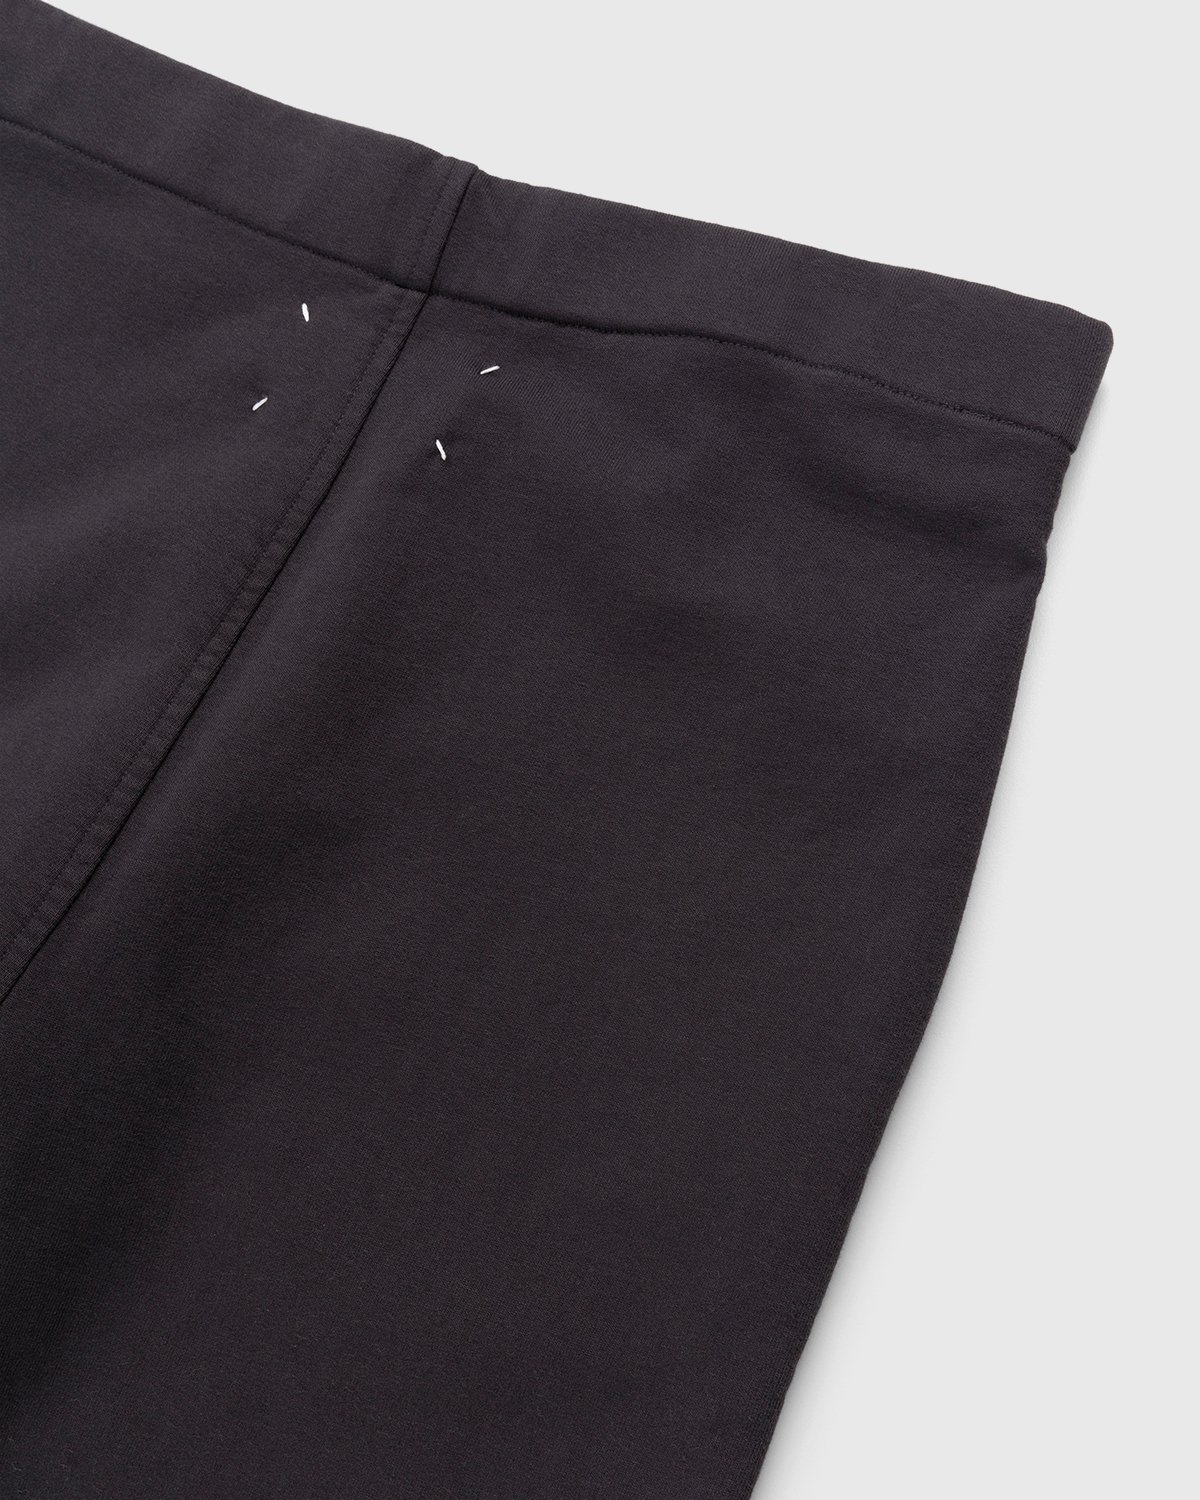 Maison Margiela - Tailored Cotton Trousers Washed Black - Clothing - Black - Image 5